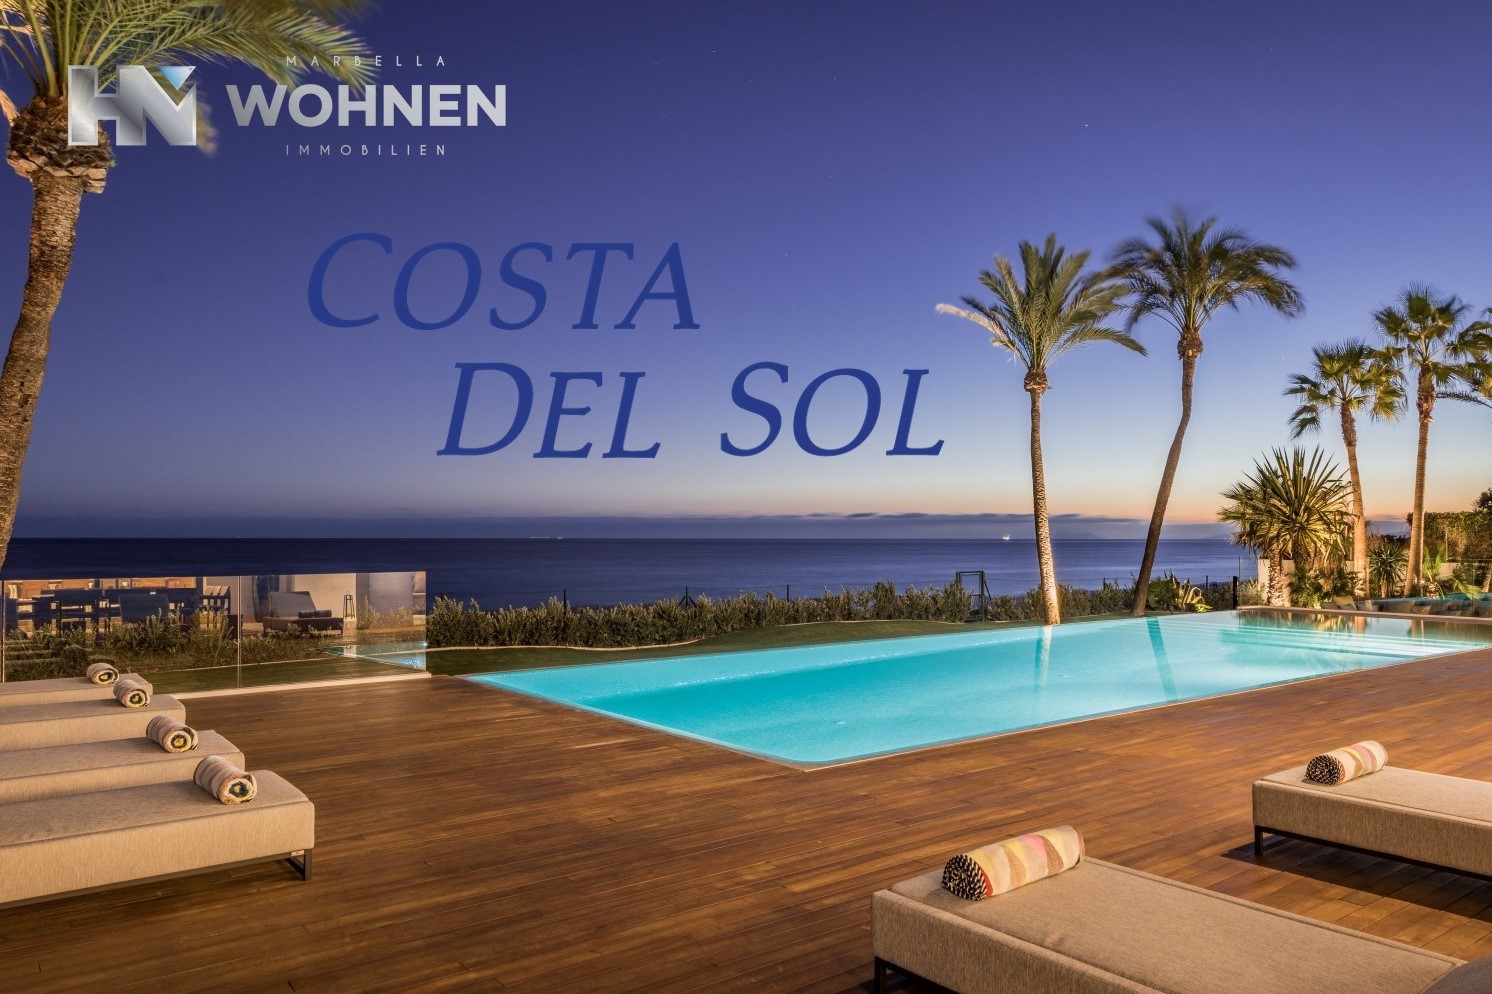 IMMOBILIEN – MARBELLA WOHNEN – Die Costa del Sol ist der beste Ort zum Leben in Spanien und hier erfahren Sie, warum!